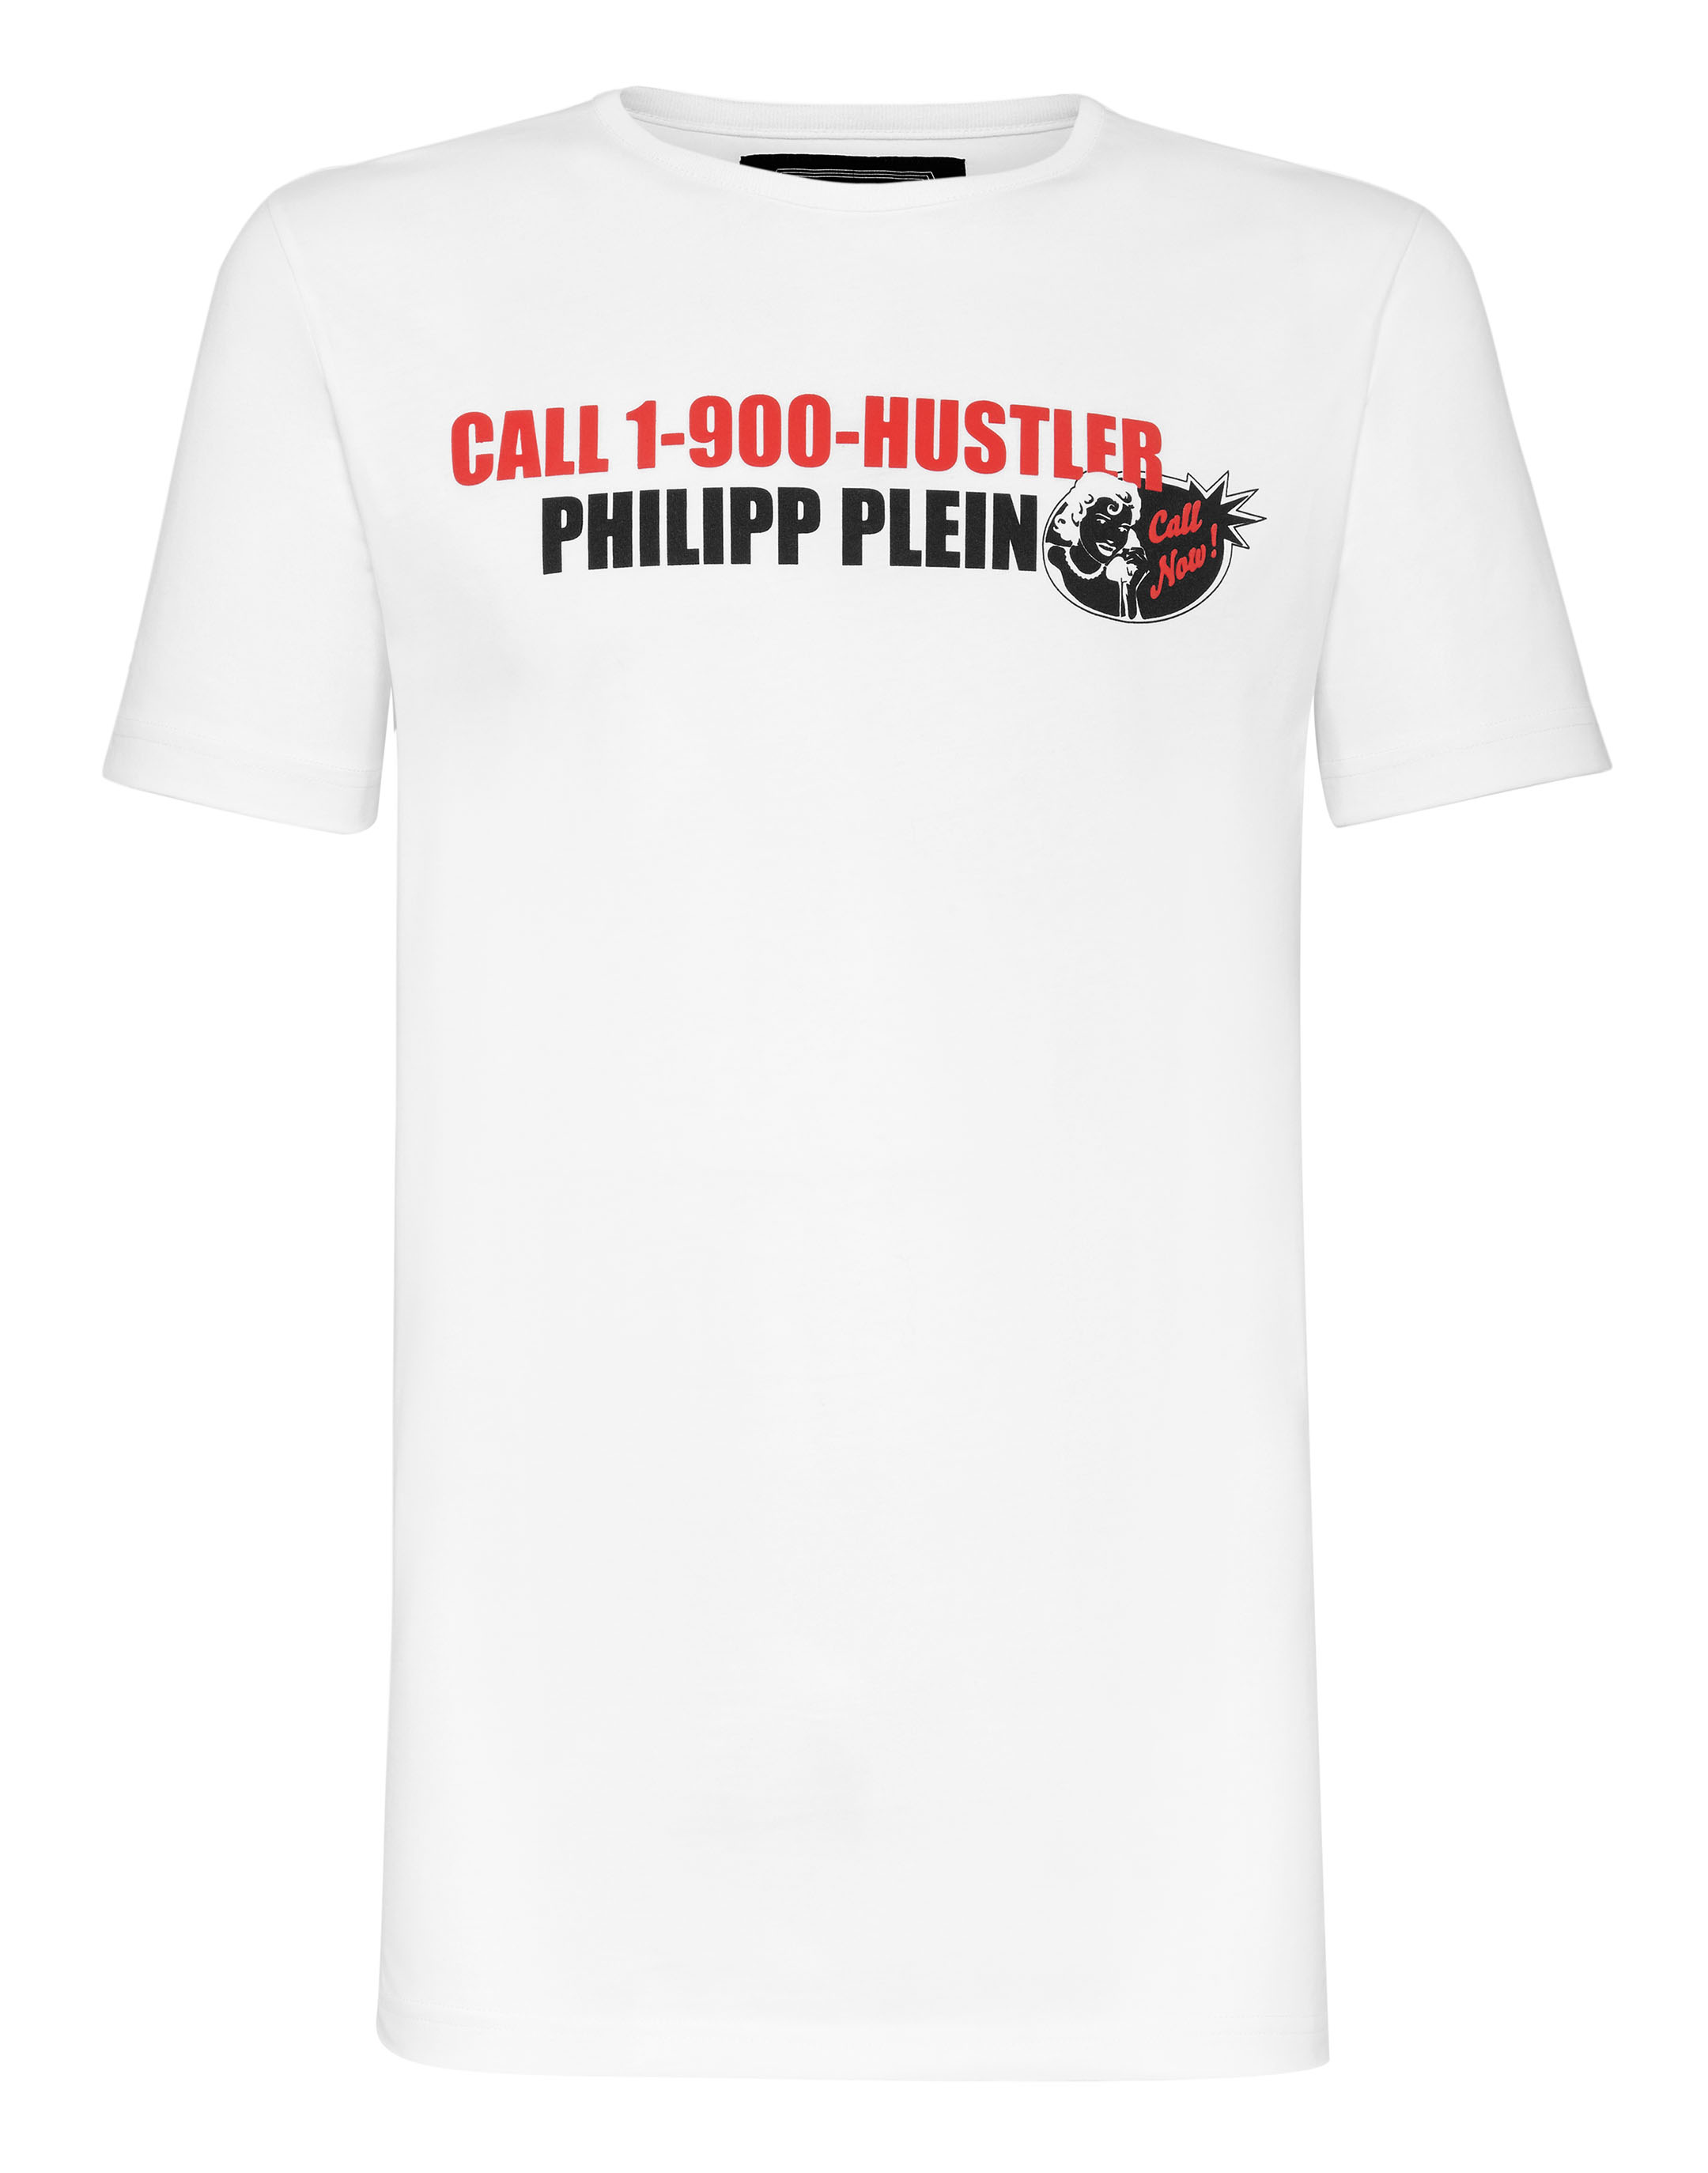 T-shirt Platinum Cut Round Neck Statement | Philipp Plein Outlet